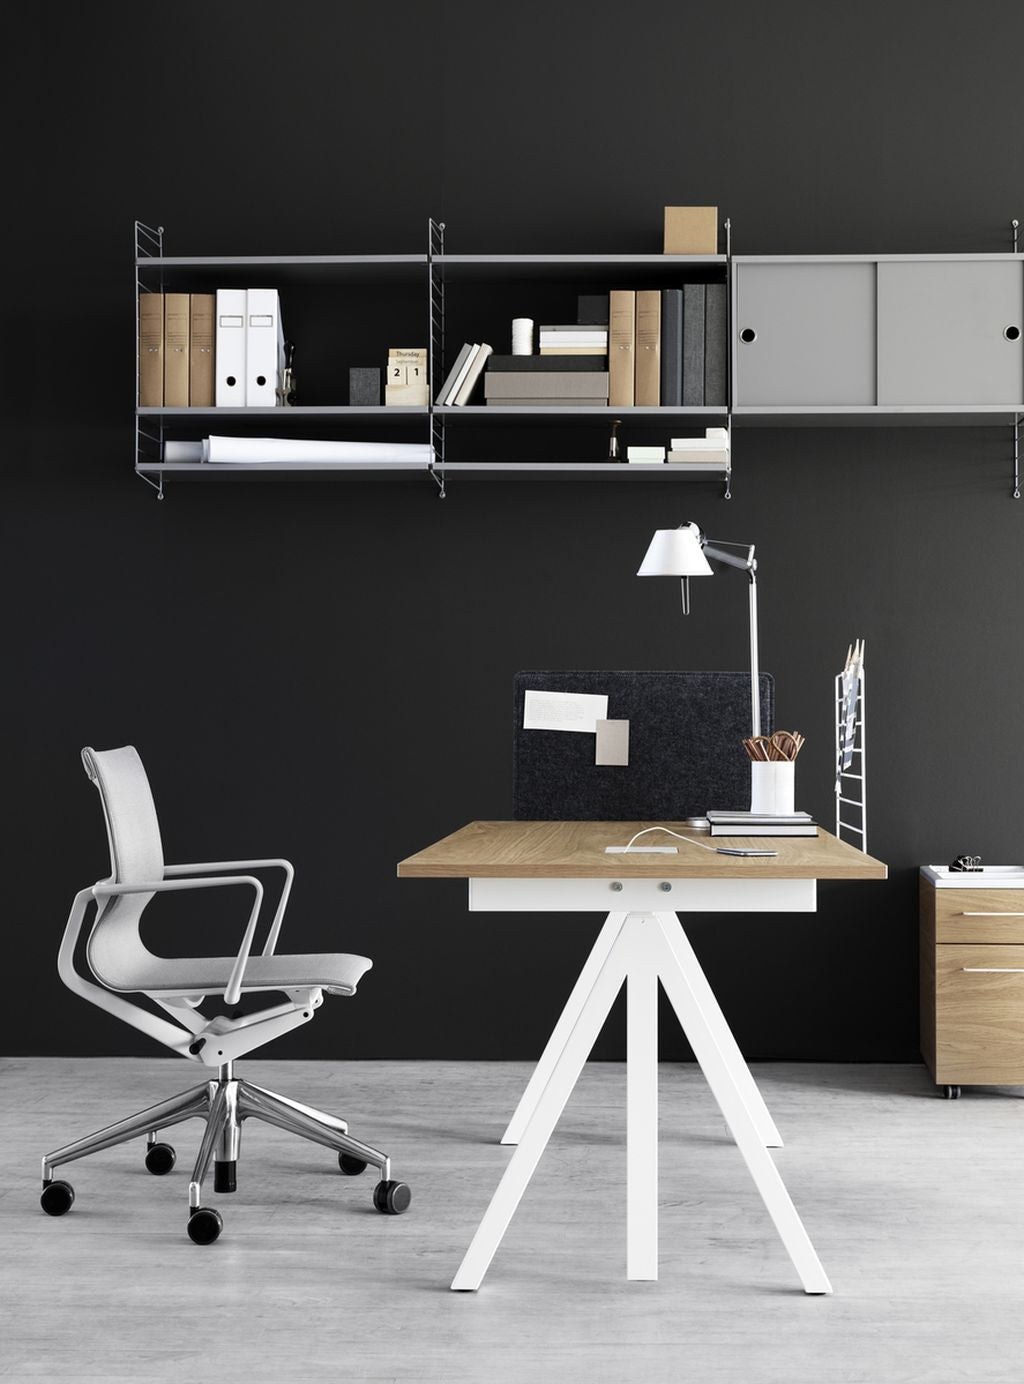 String Furniture Fungerar höjd justerbar skrivbord 78x120 cm, ljusgrå linoleum